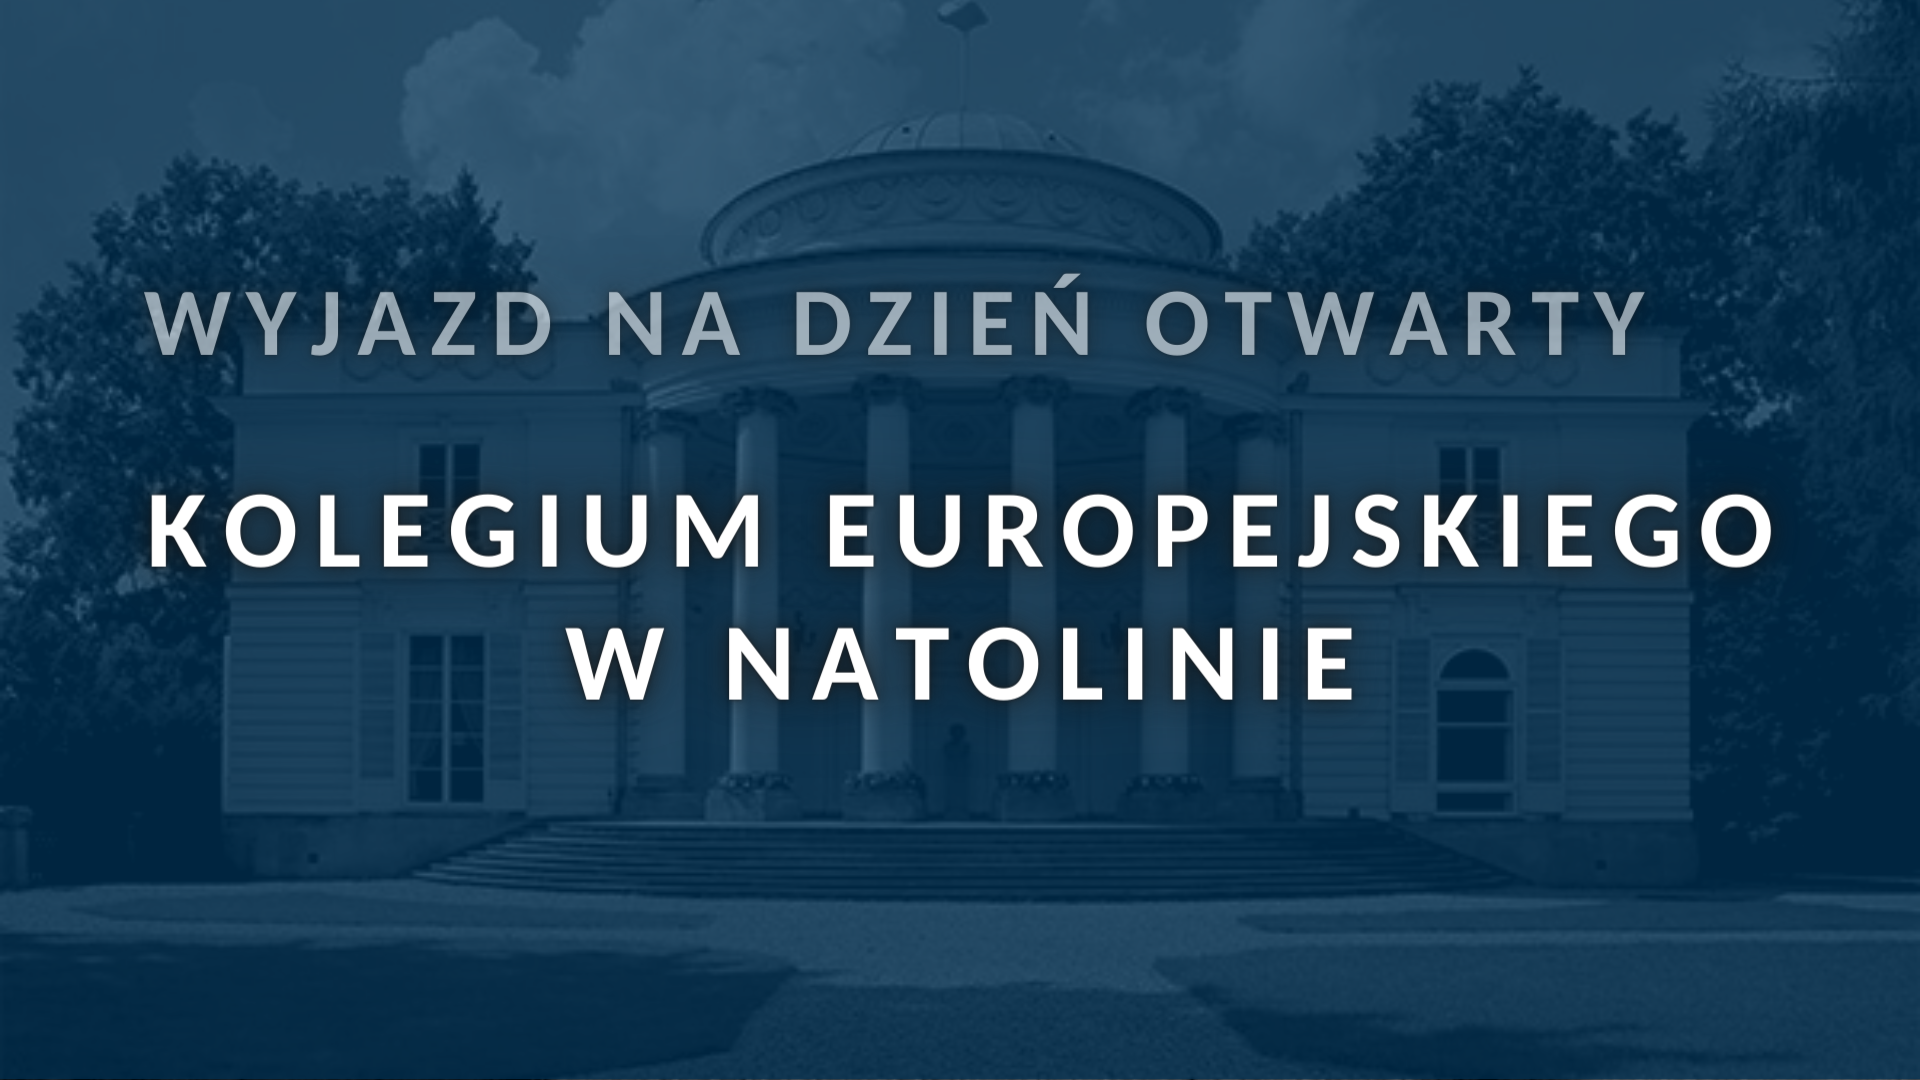 Wyjazd na dzień otwarty Kolegium Europejskiego w Natolinie